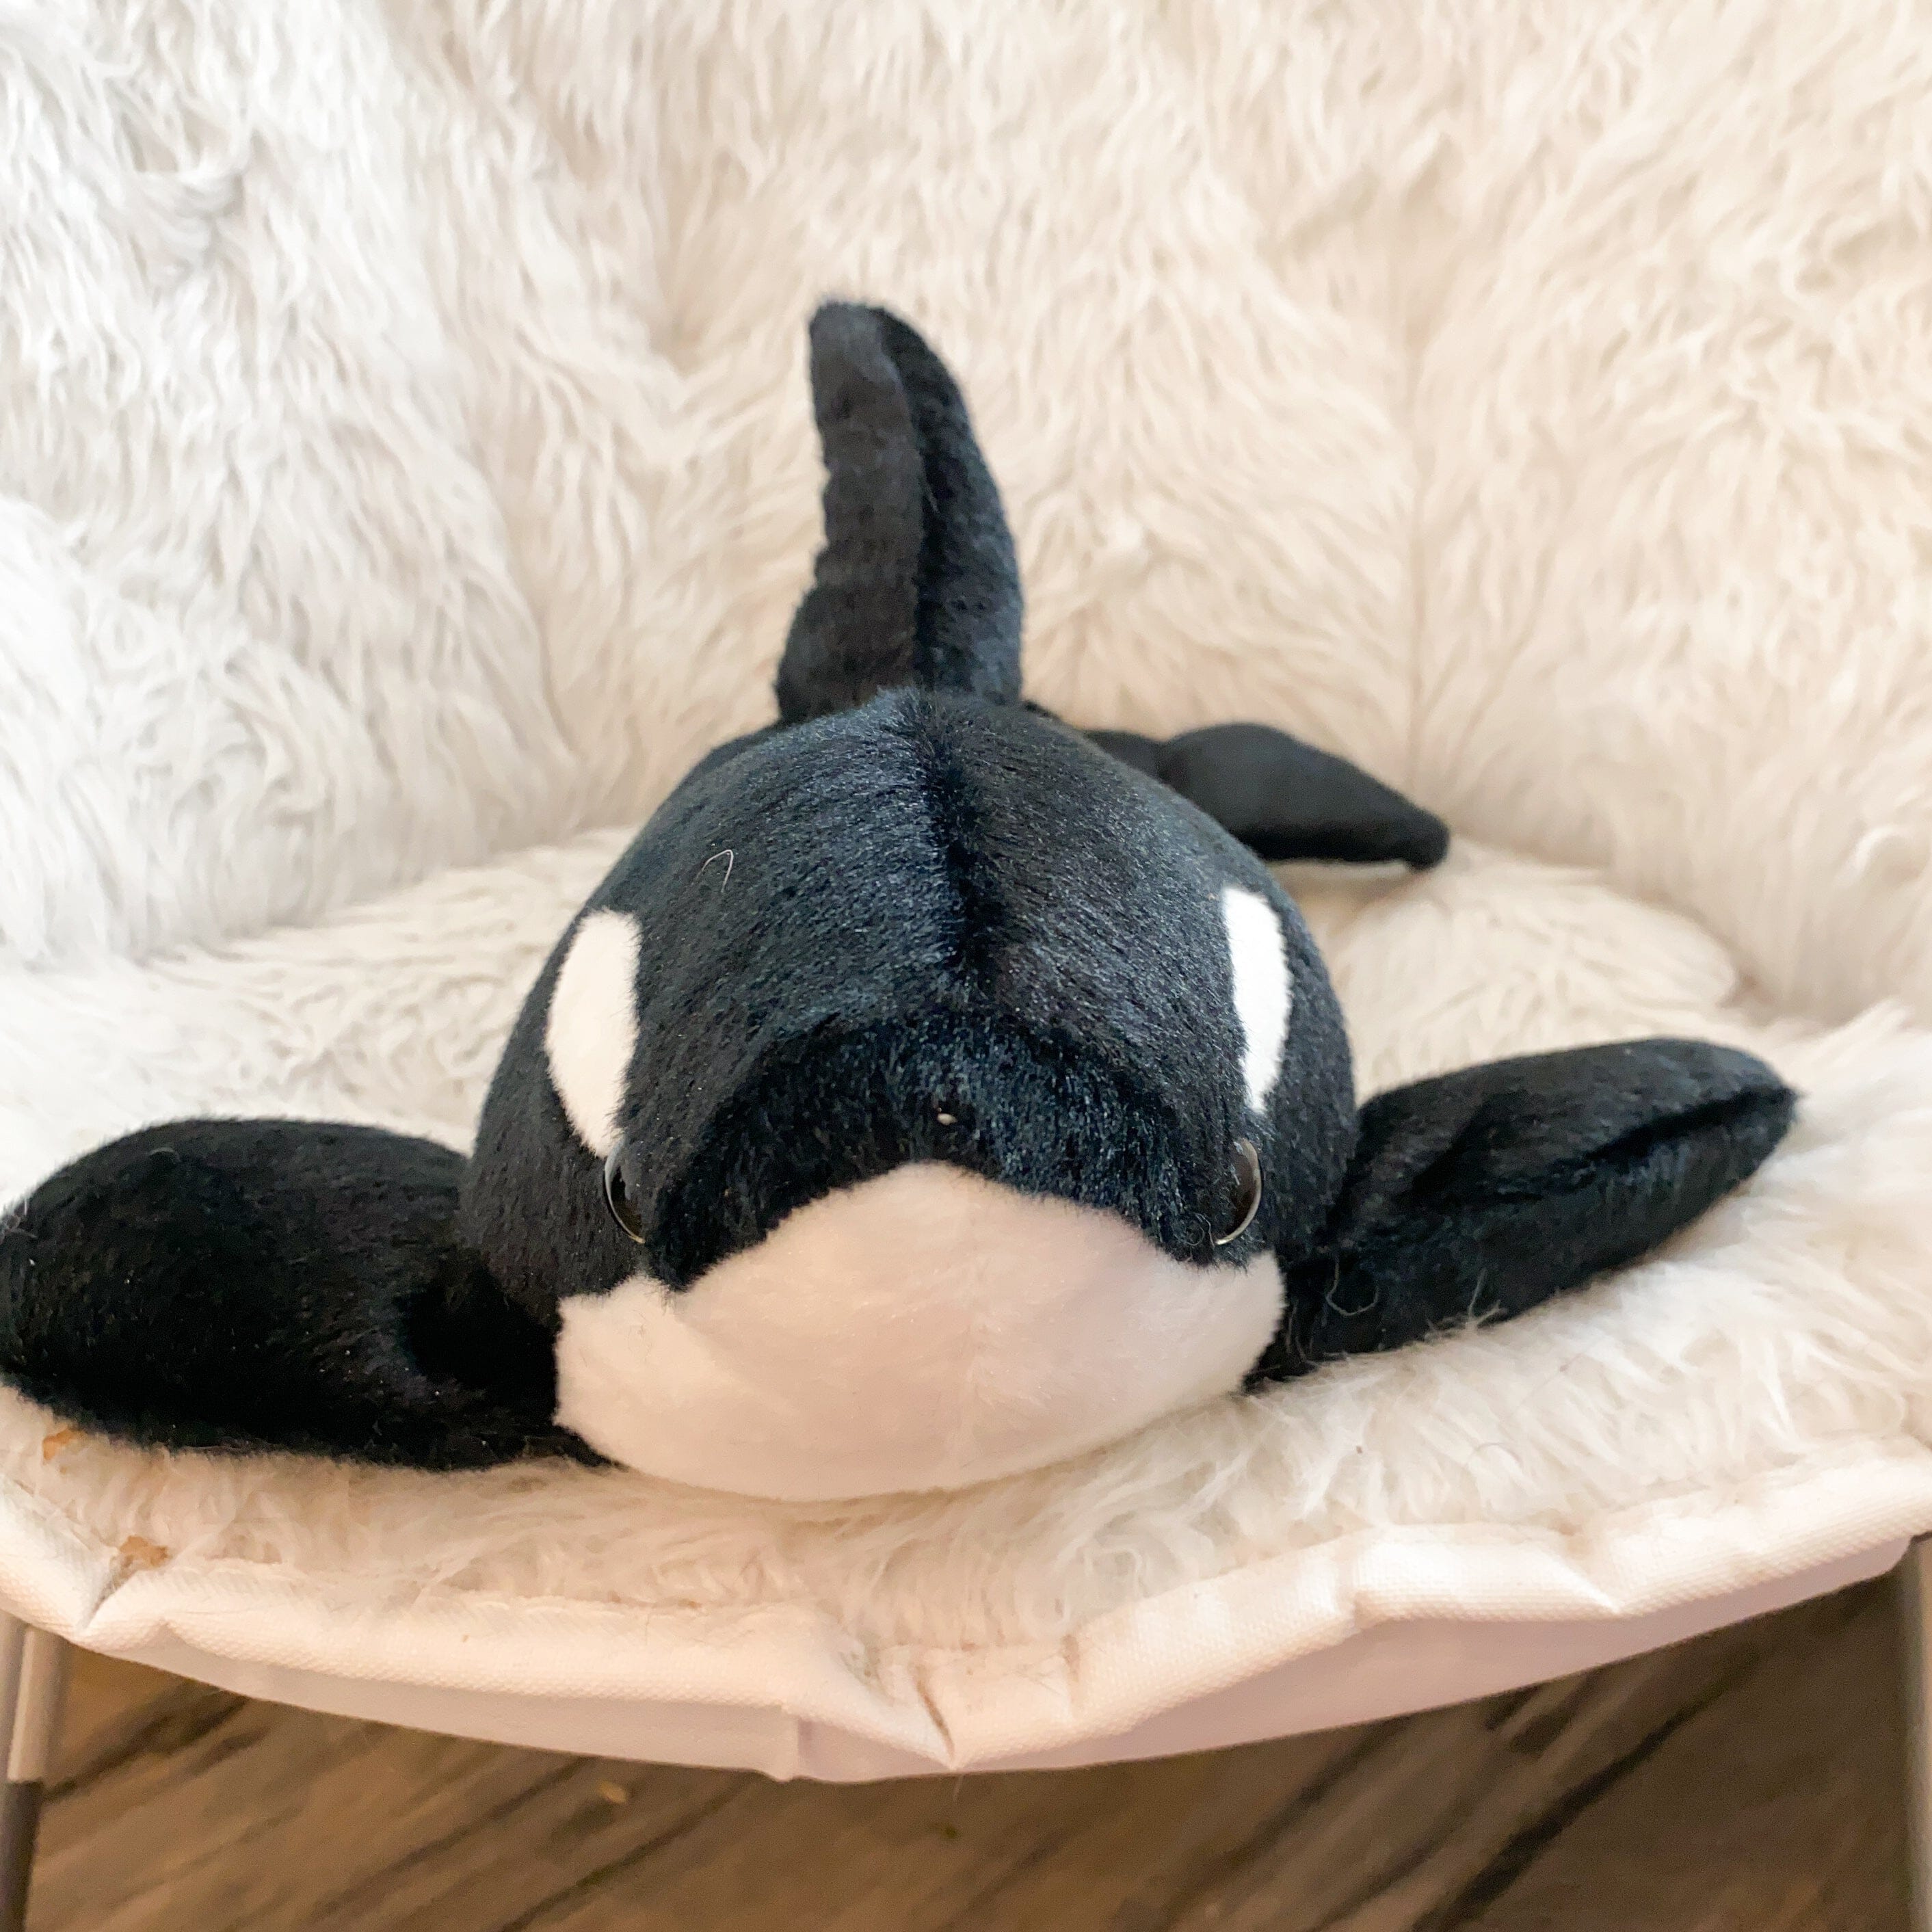 Orca Whale Plush The Autistic Innovator 